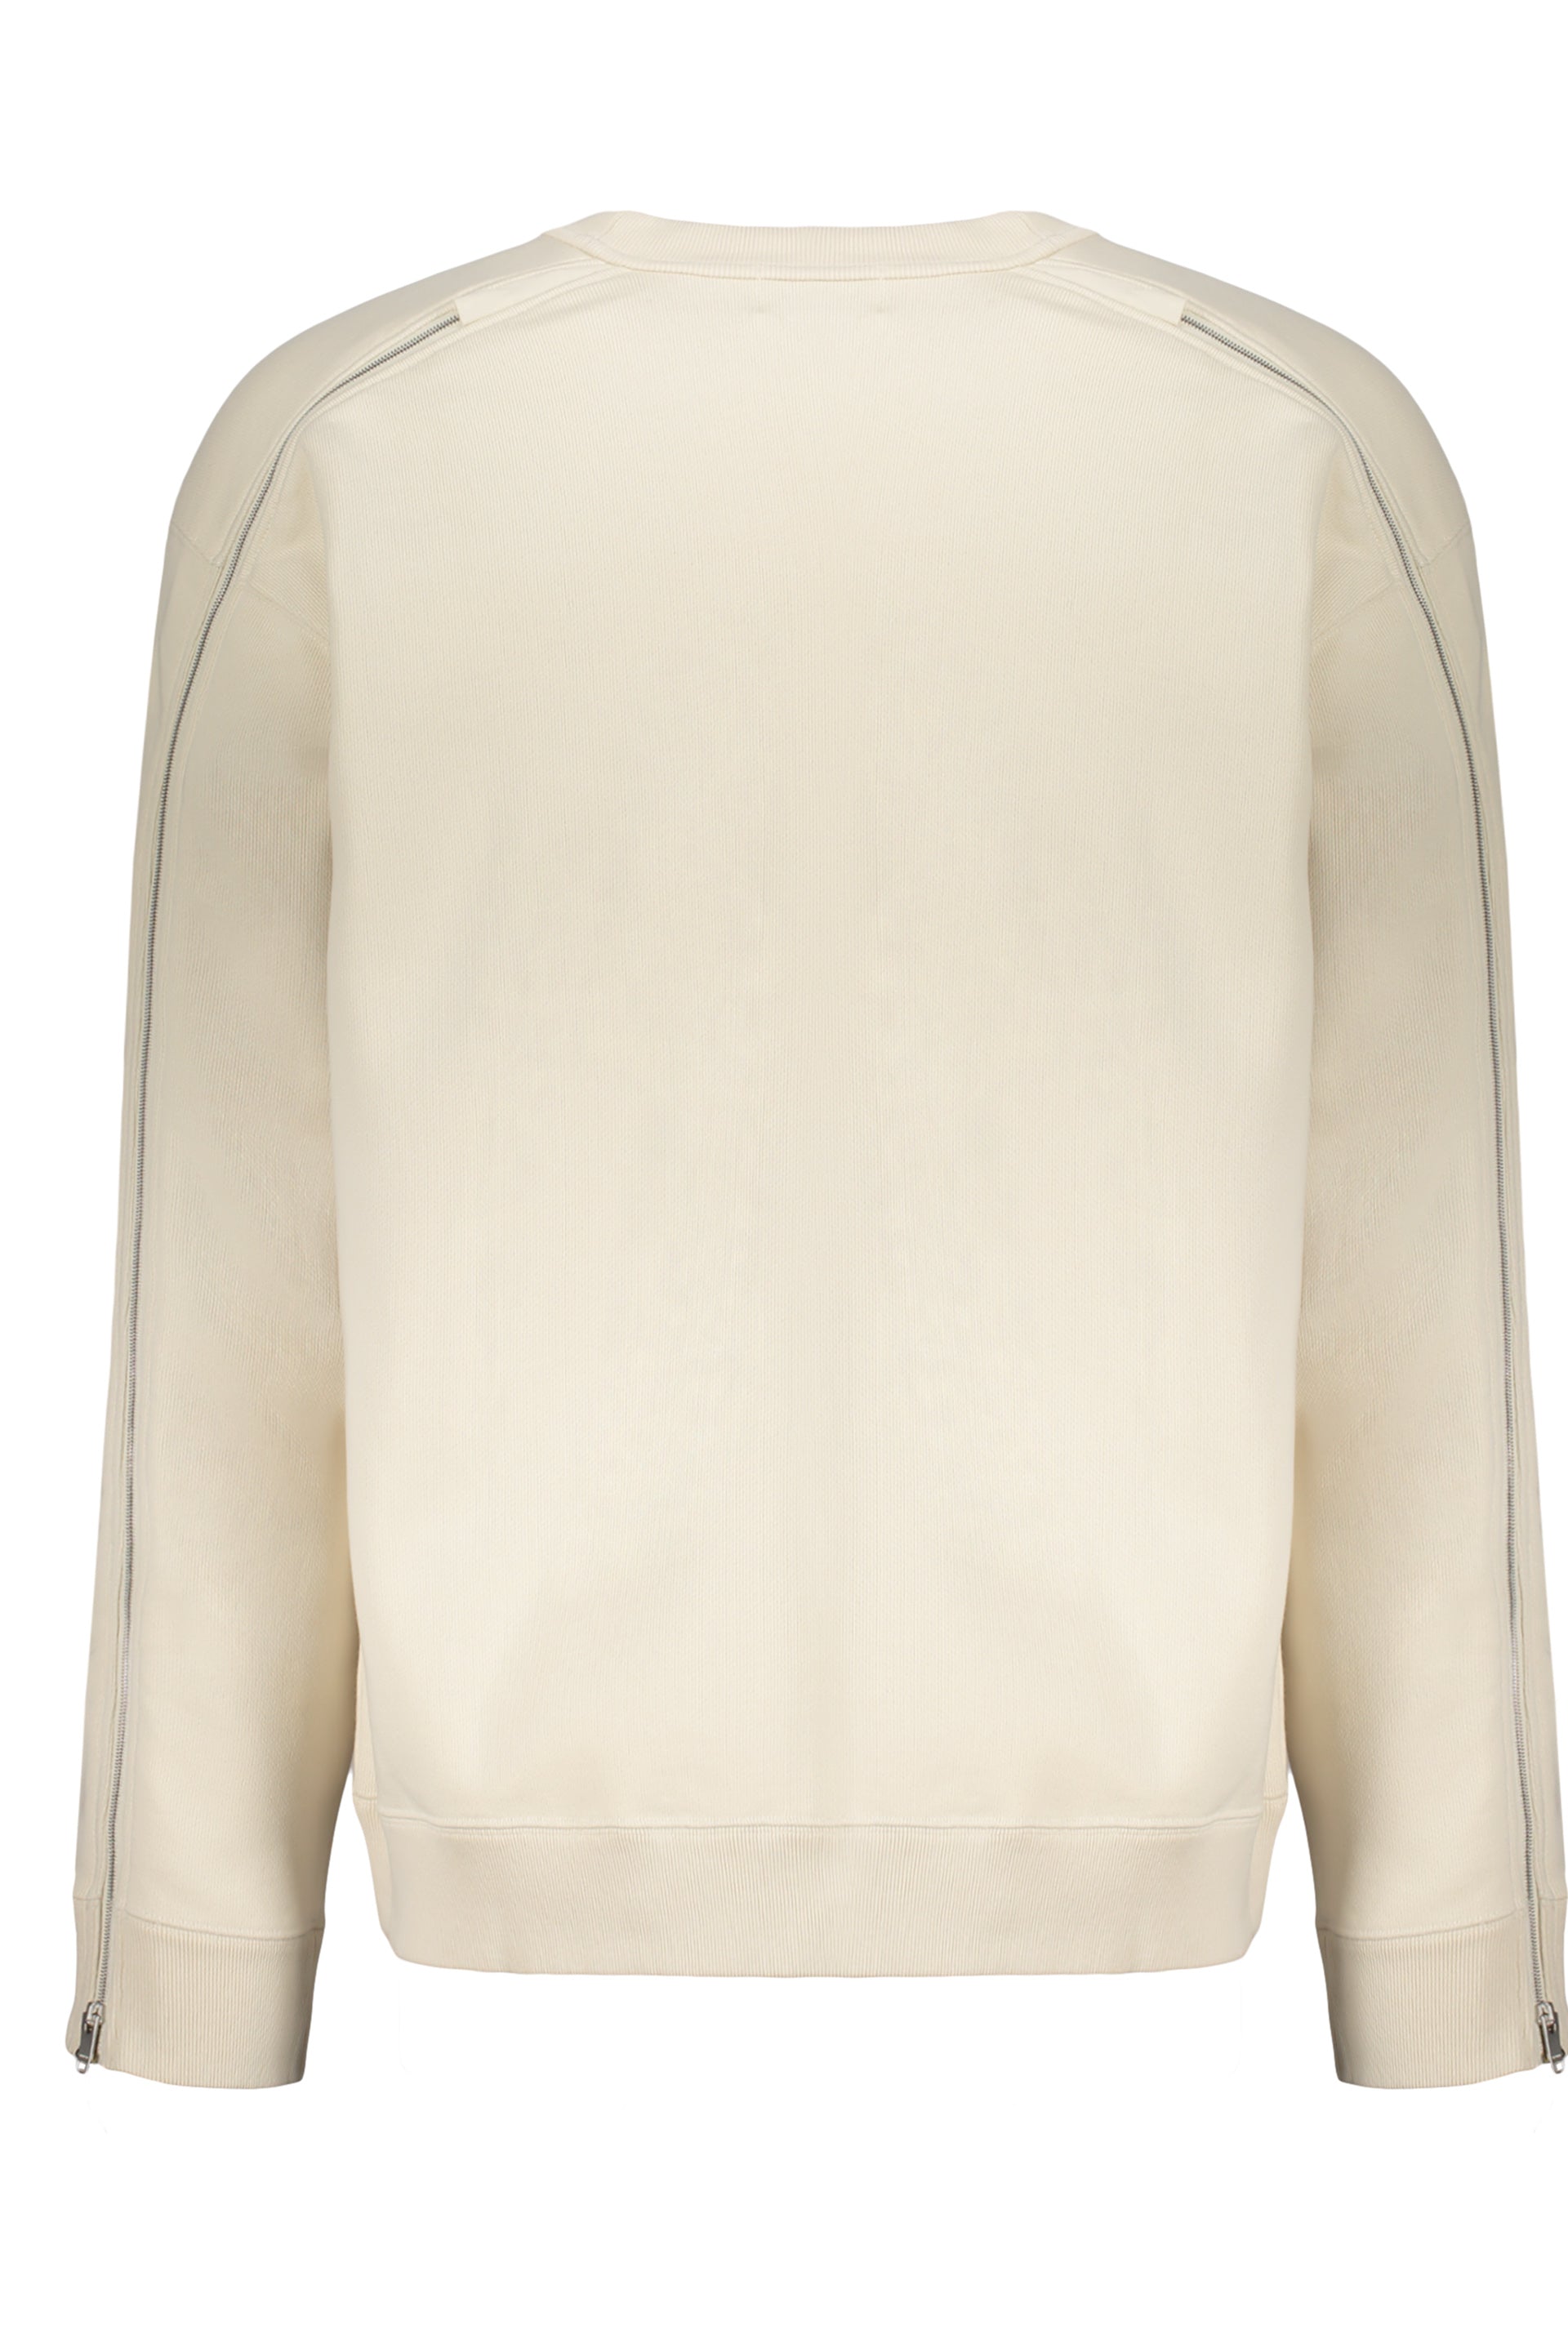 AMBUSH-OUTLET-SALE-Cotton-sweatshirt-Strick-L-ARCHIVE-COLLECTION-2.jpg